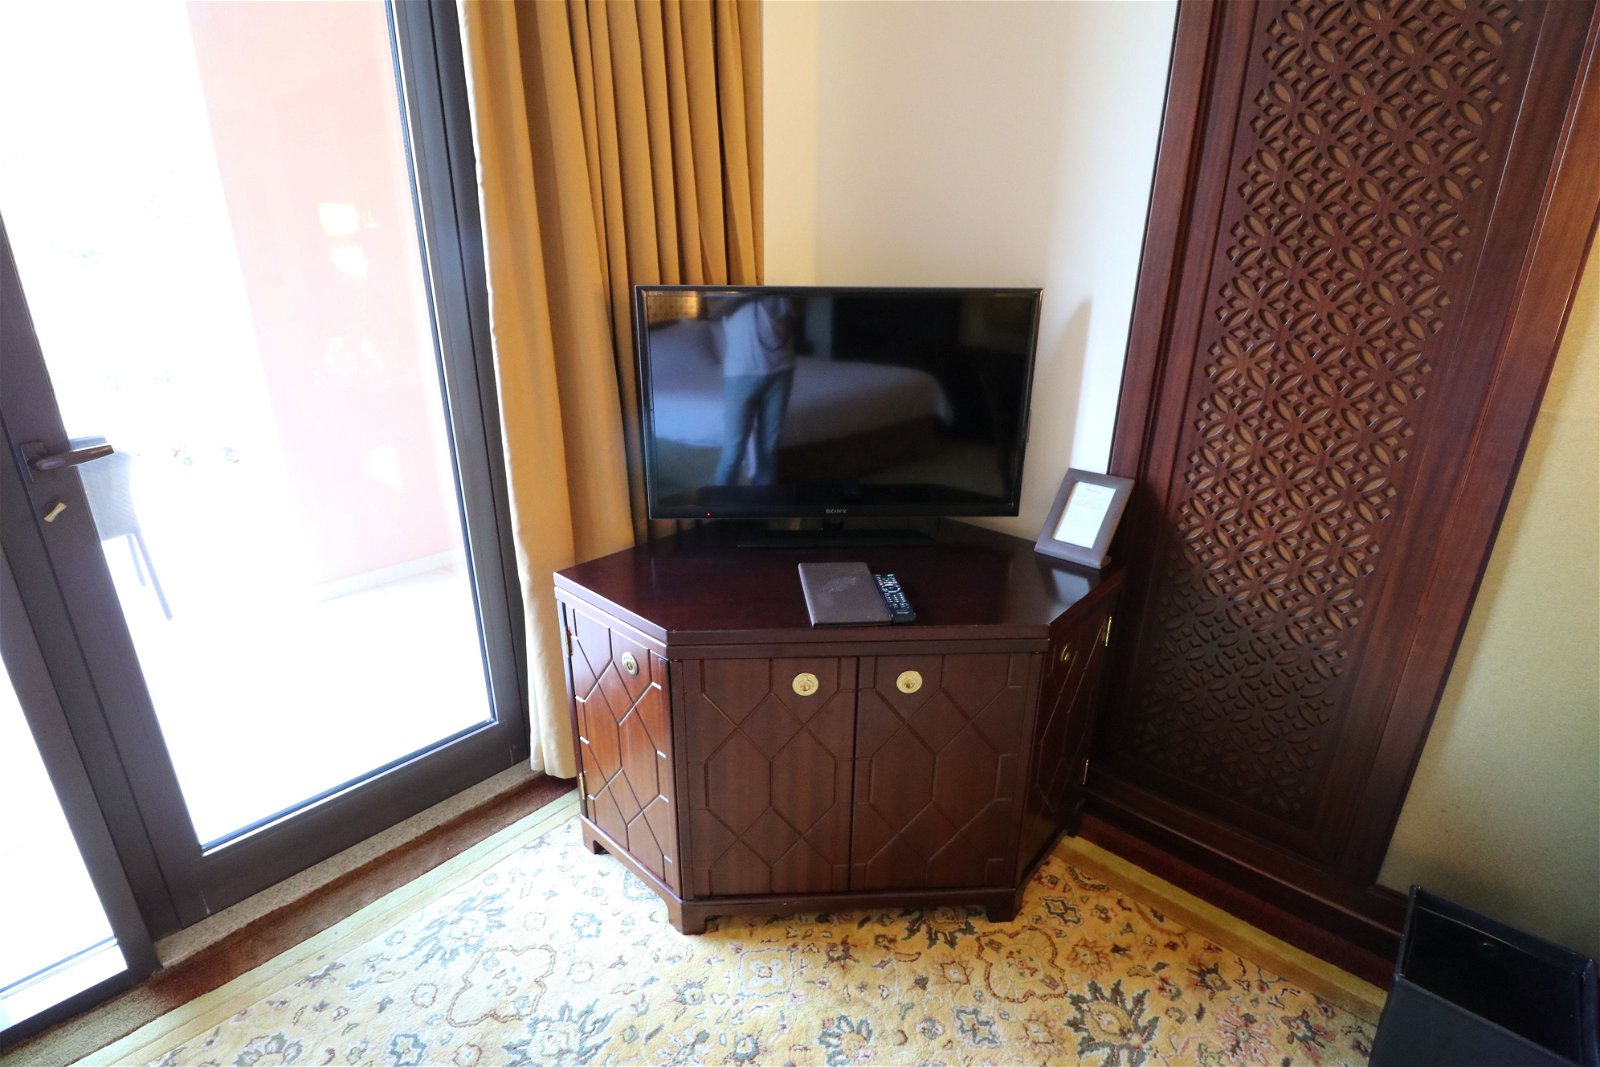 Deluxe room at the Shangri-La Barr Al Jissah Resort